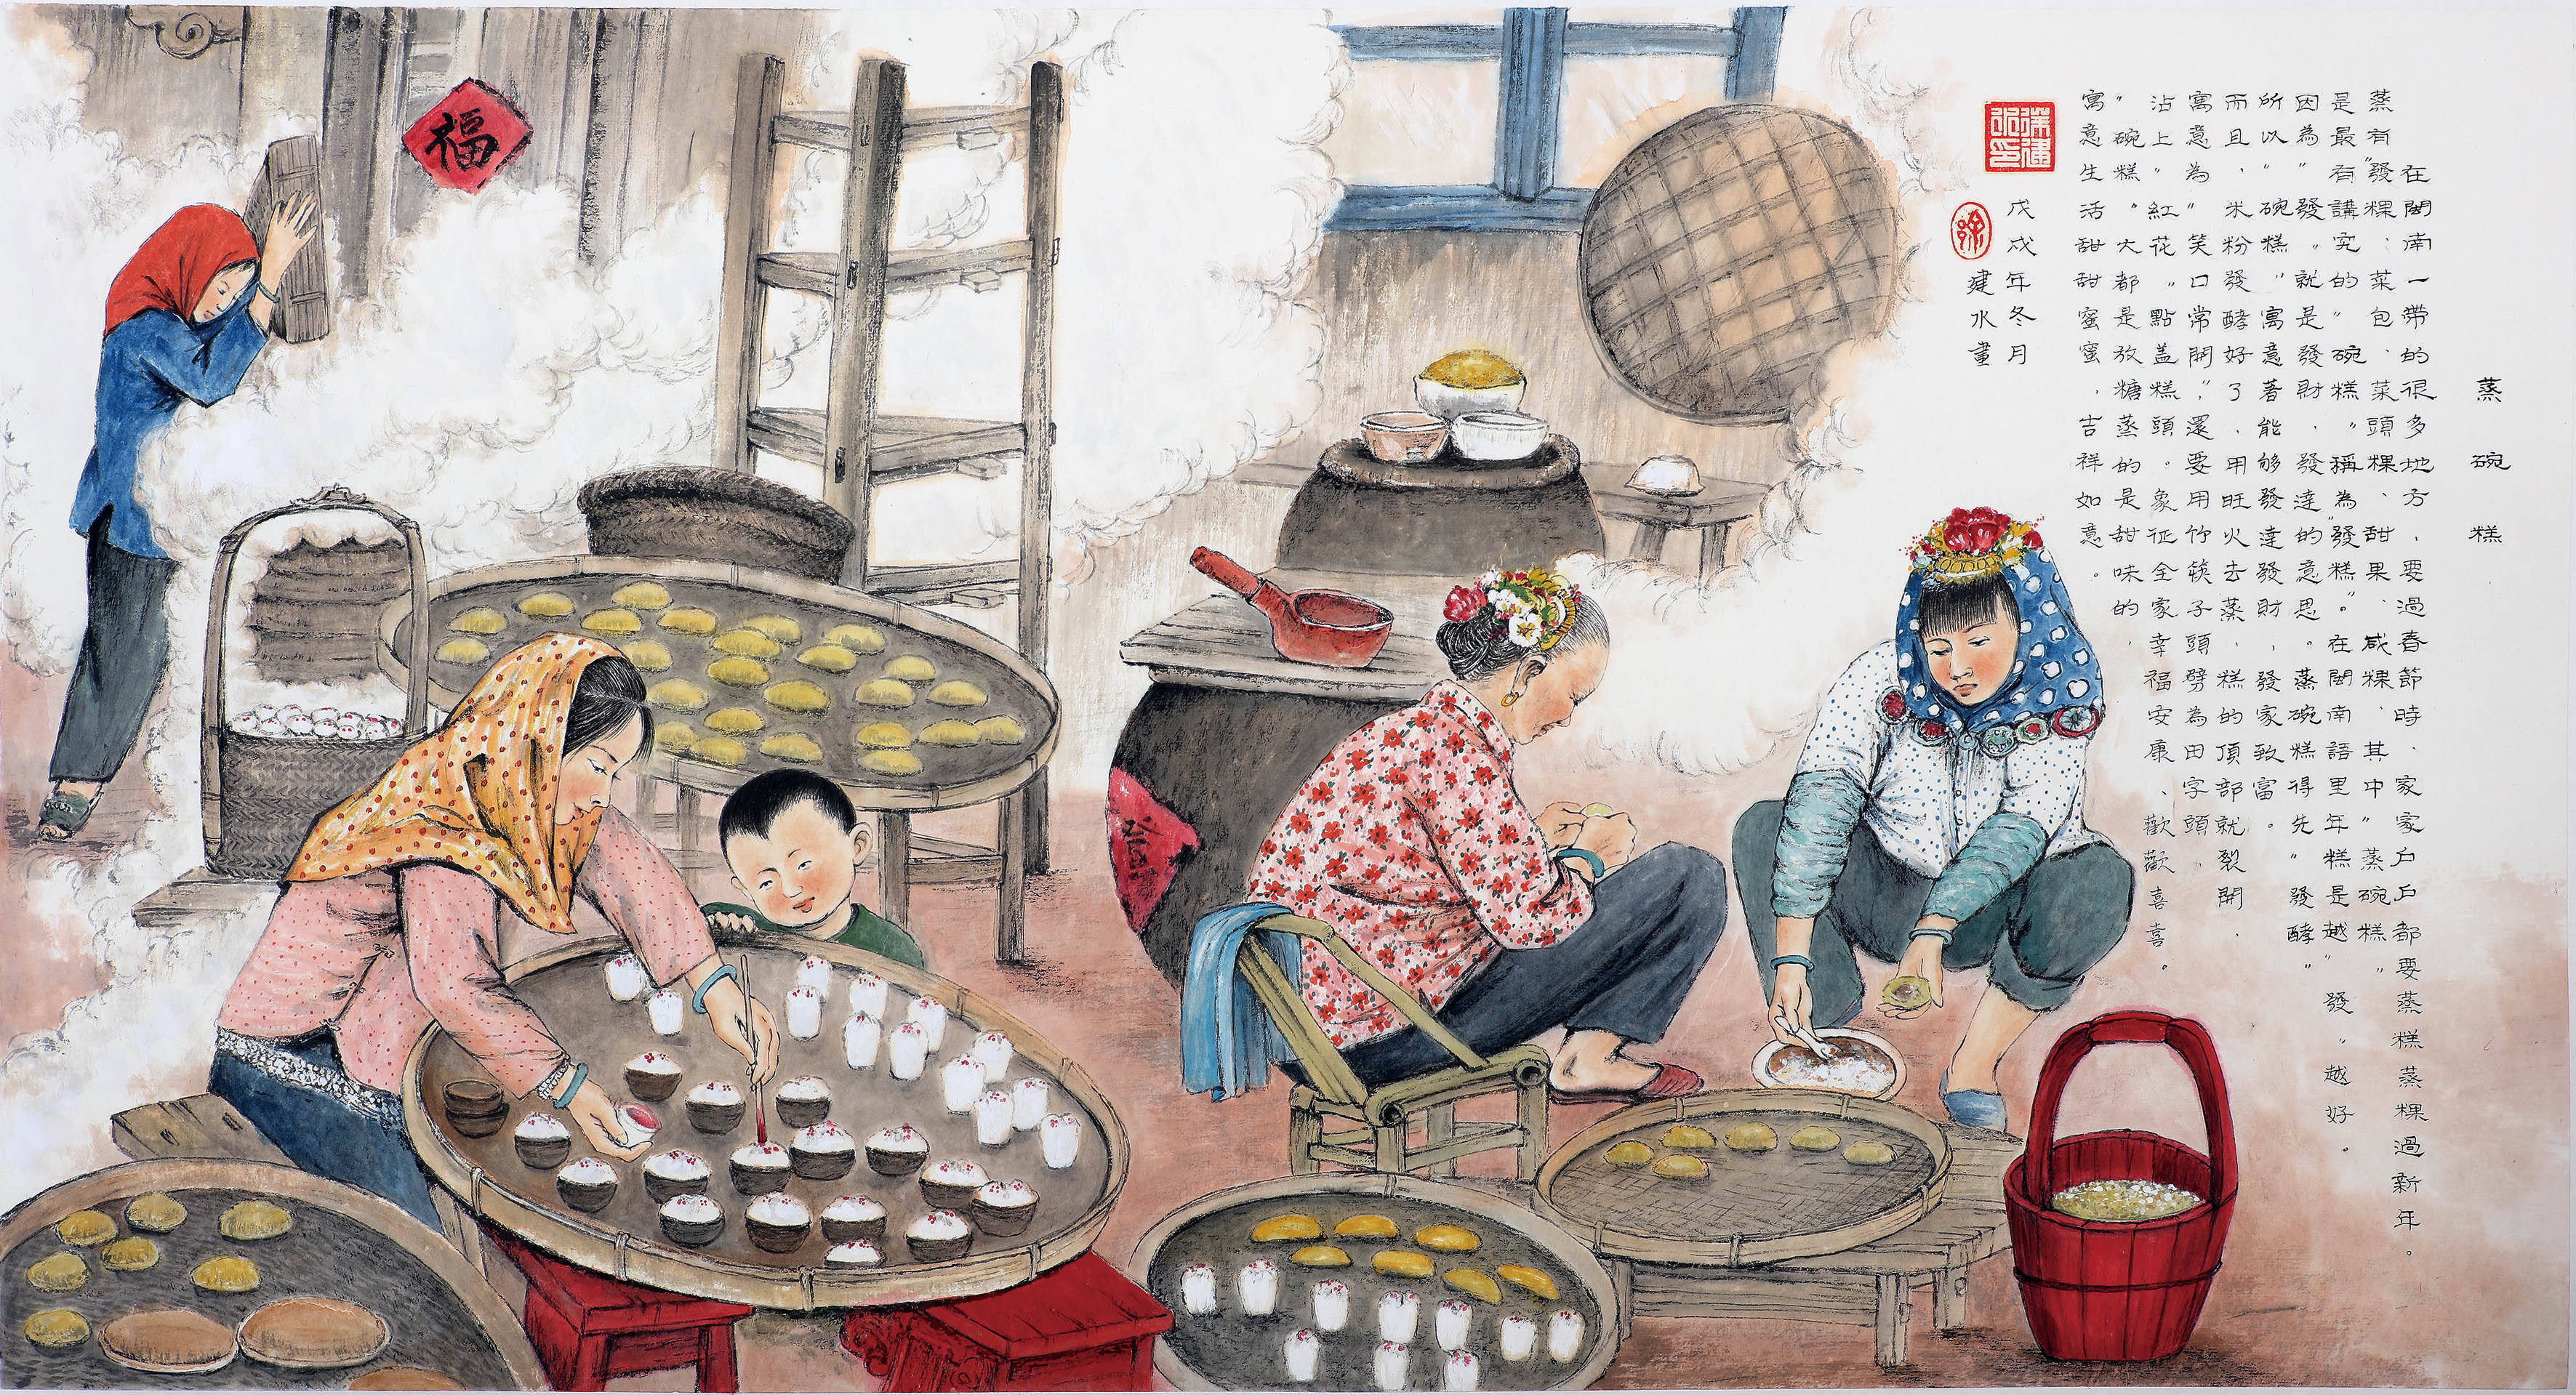 《拾旧忆——童年的史诗》迎新春徐建水民俗绘画展,在